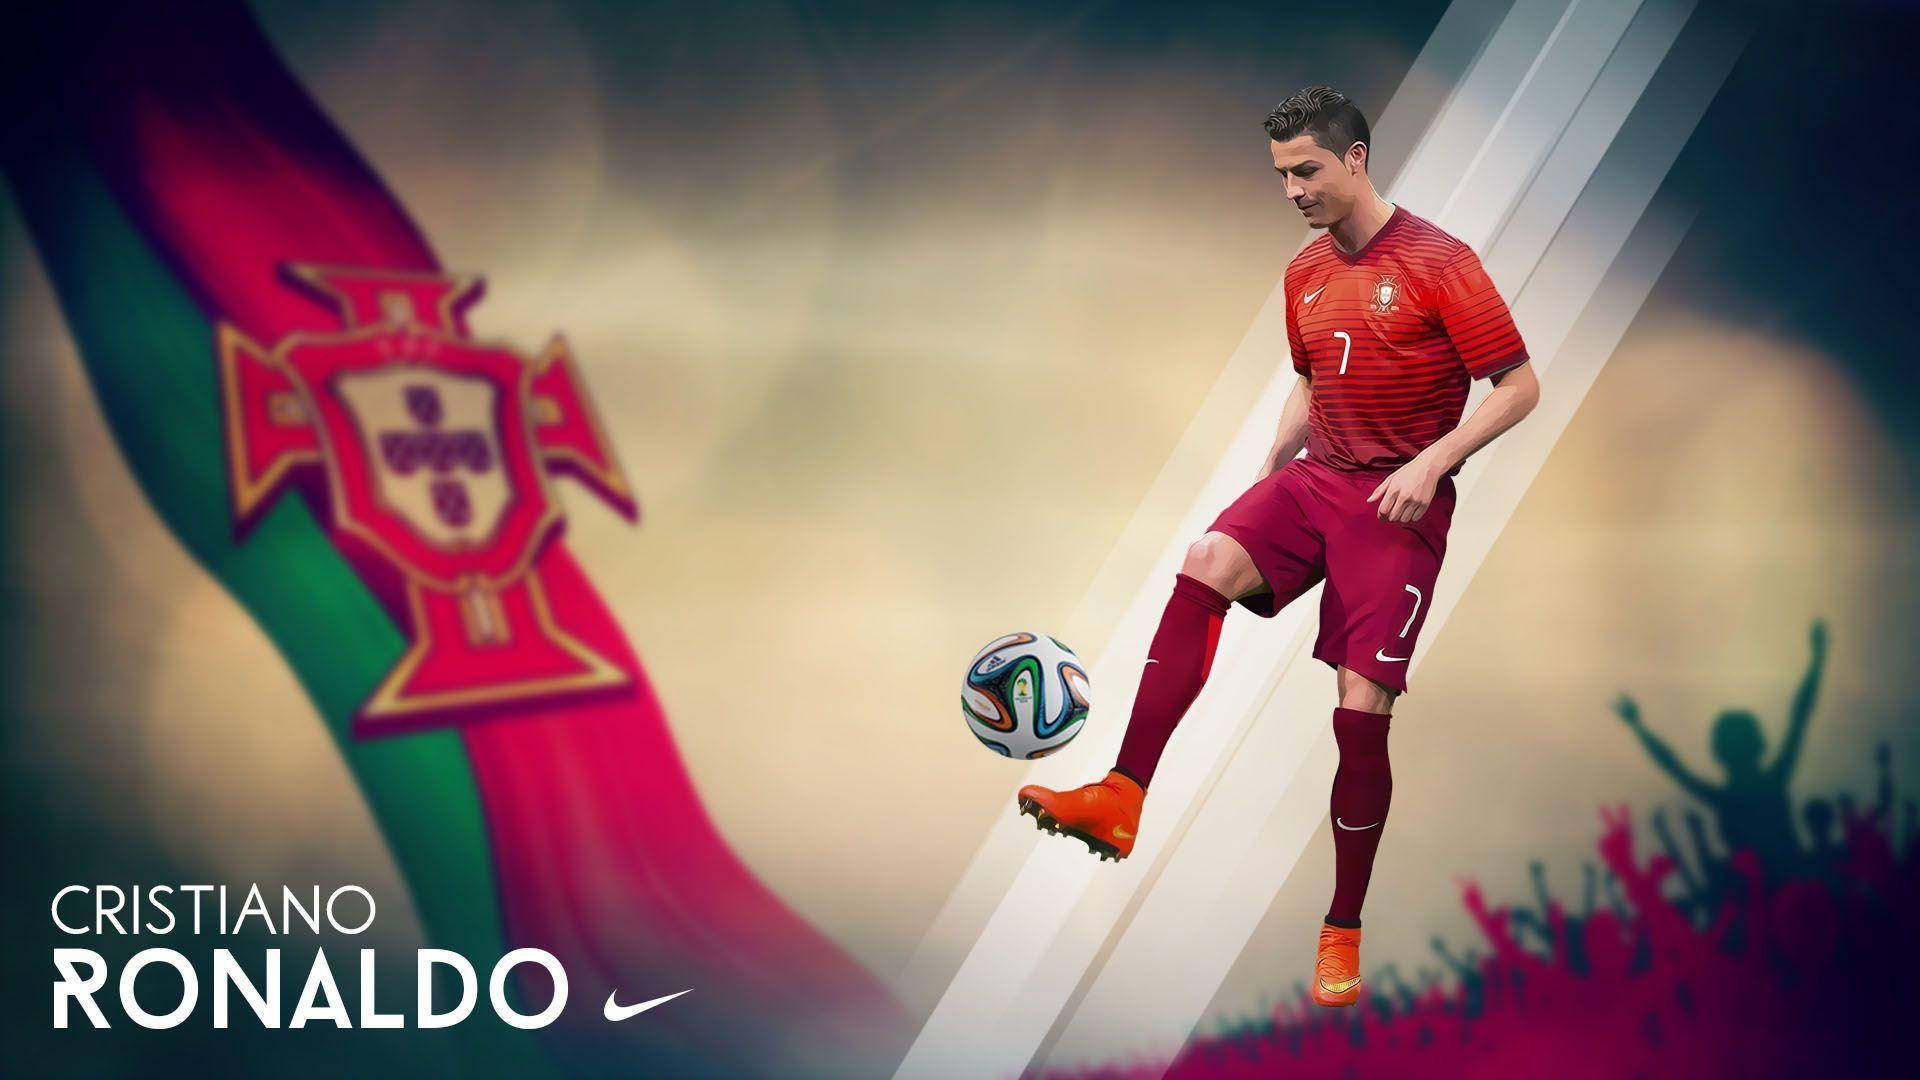 La Liga Cristiano Ronaldo Background